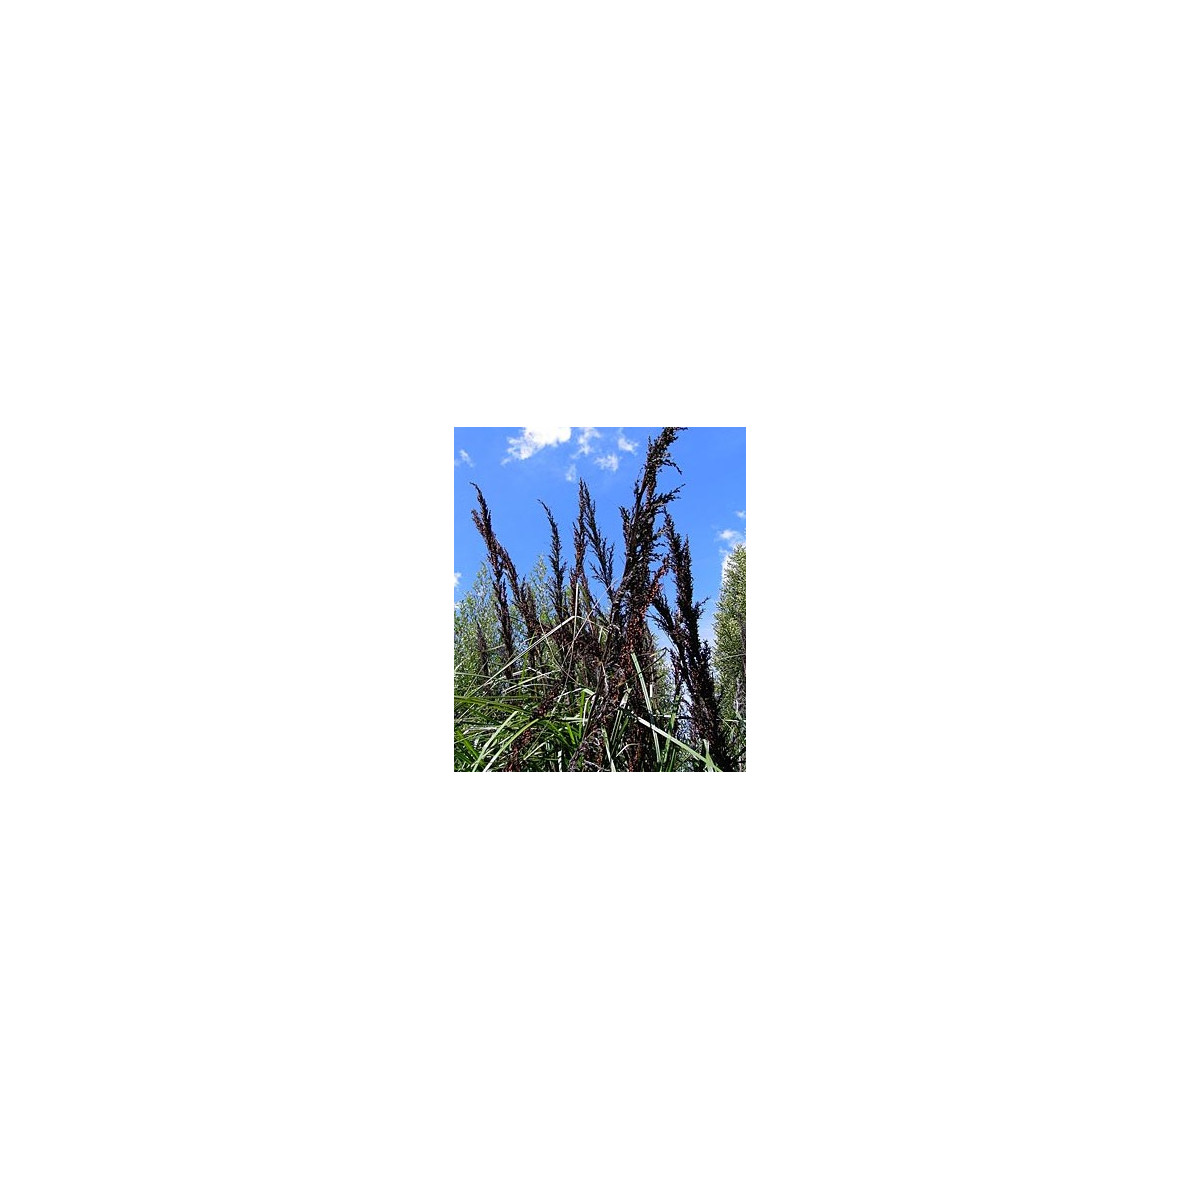 Ozdobný rákos - Gahnia trifida - semena ozdobného rákosu - 10 ks